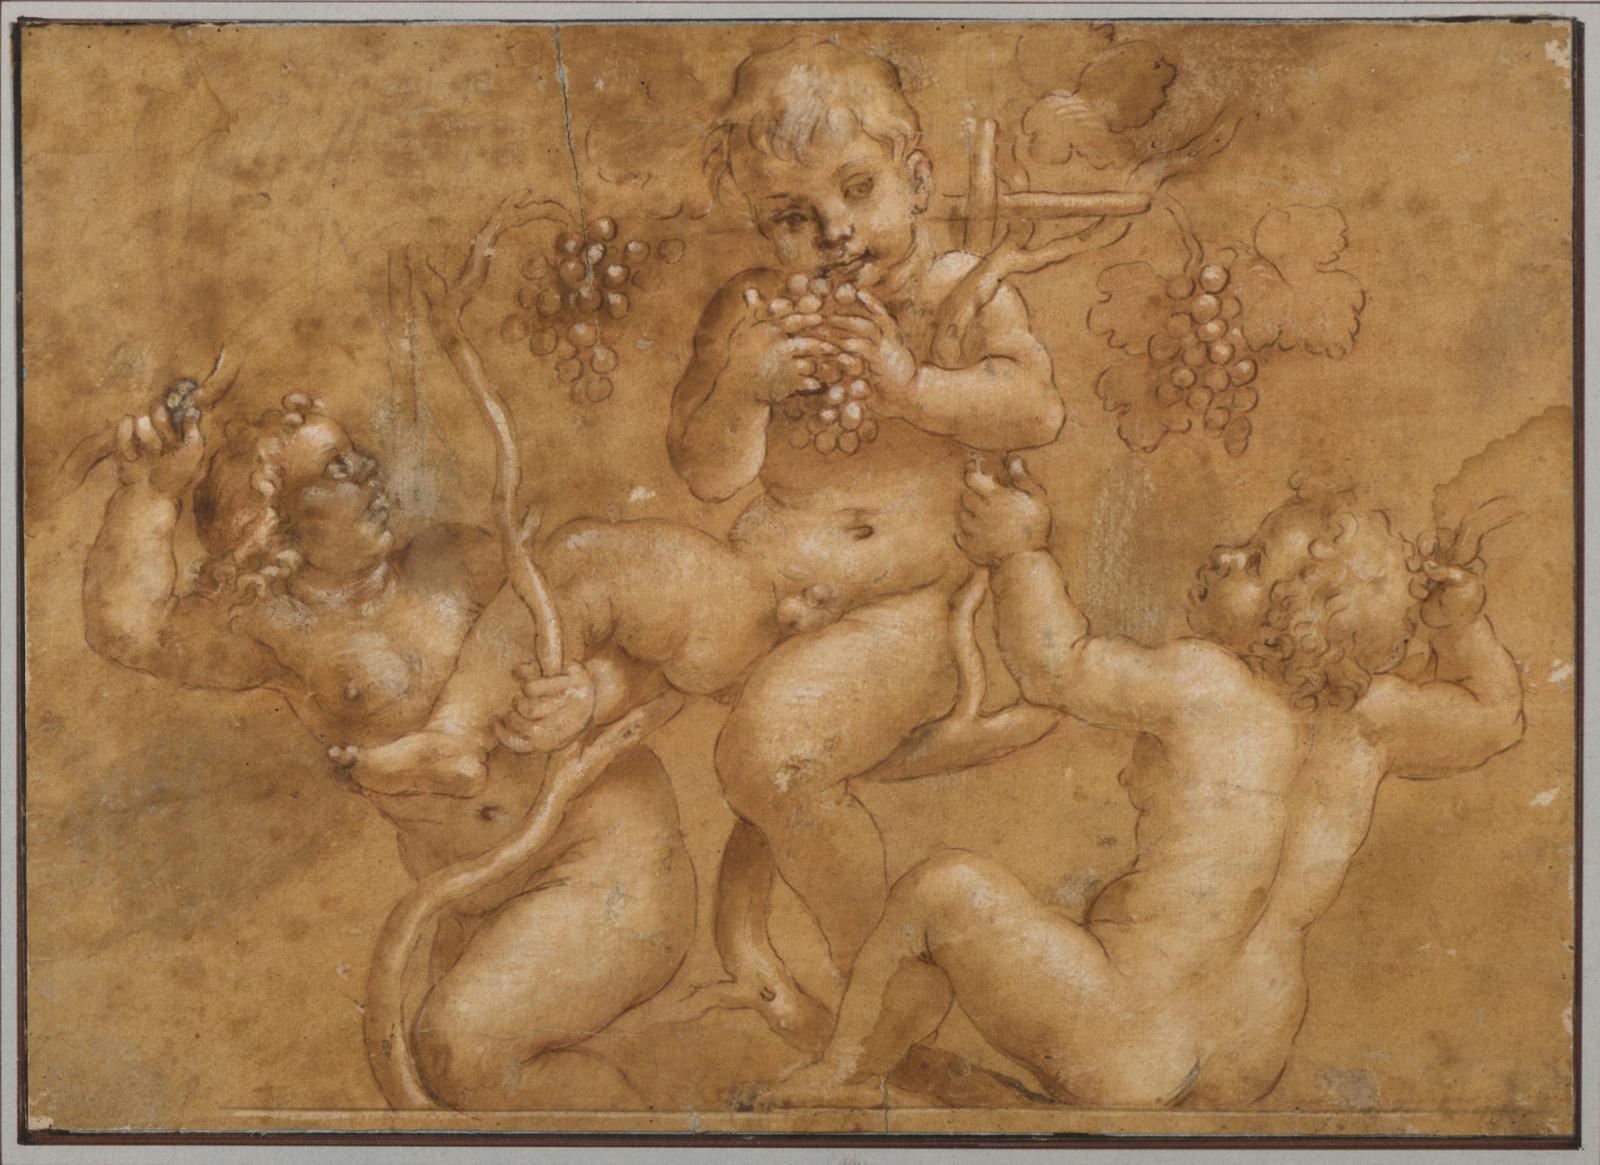 1 100 € École de Giulio Romano (1499-1546), Allégorie de l’Automne, plume et encre brune, lavis brun, rehauts de gouache blanche sur trait